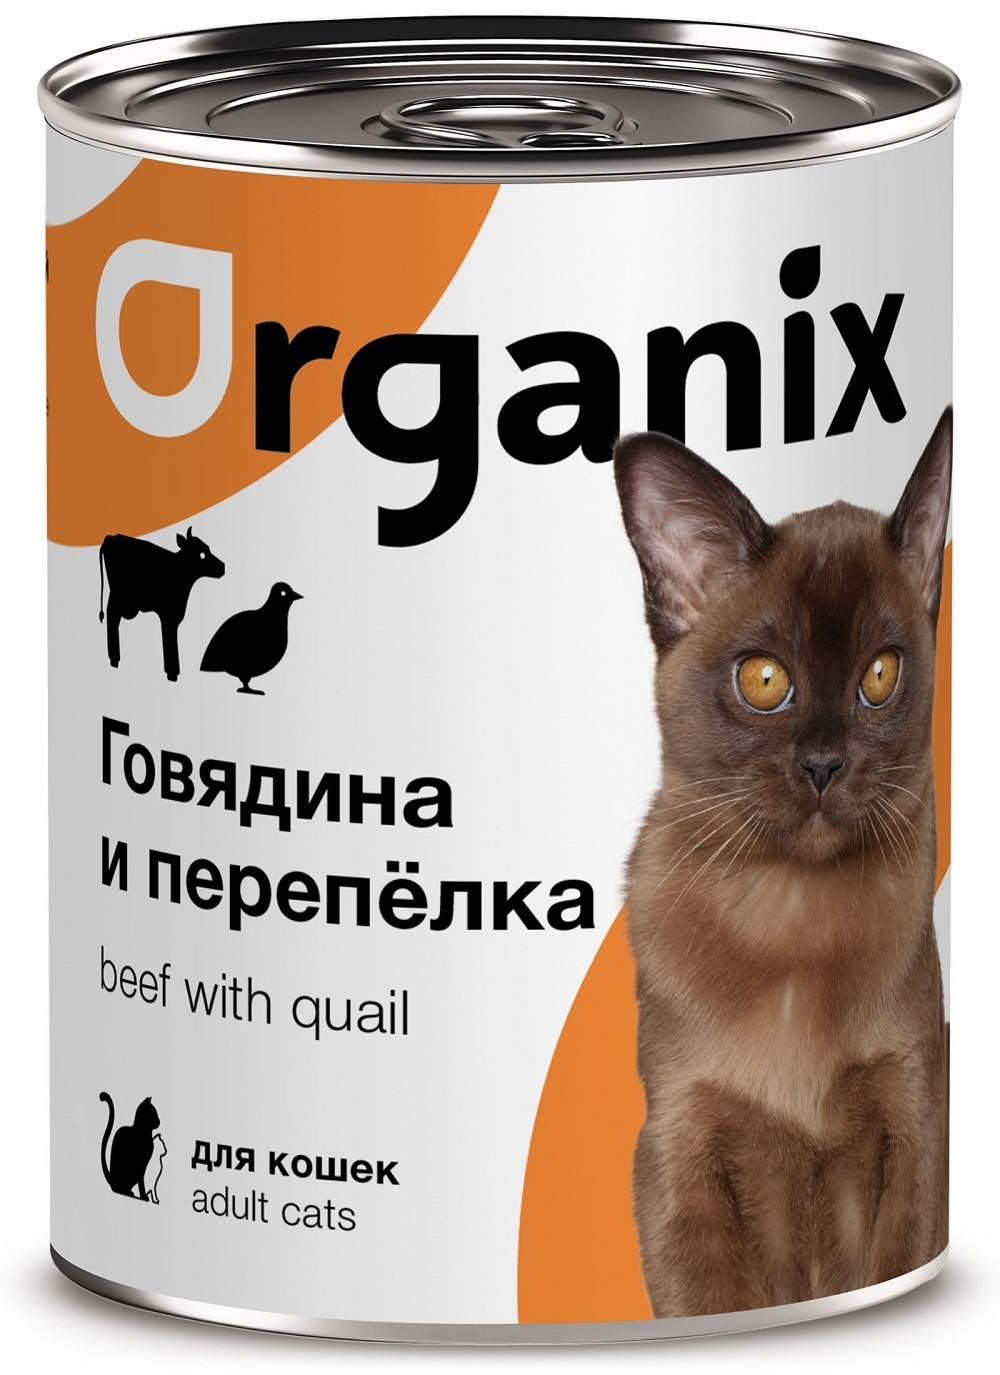 Organix консервы Organix консервы с говядиной и перепелкой для кошек (410 г) organix консервы organix консервы с говядиной и перепелкой для кошек 410 г